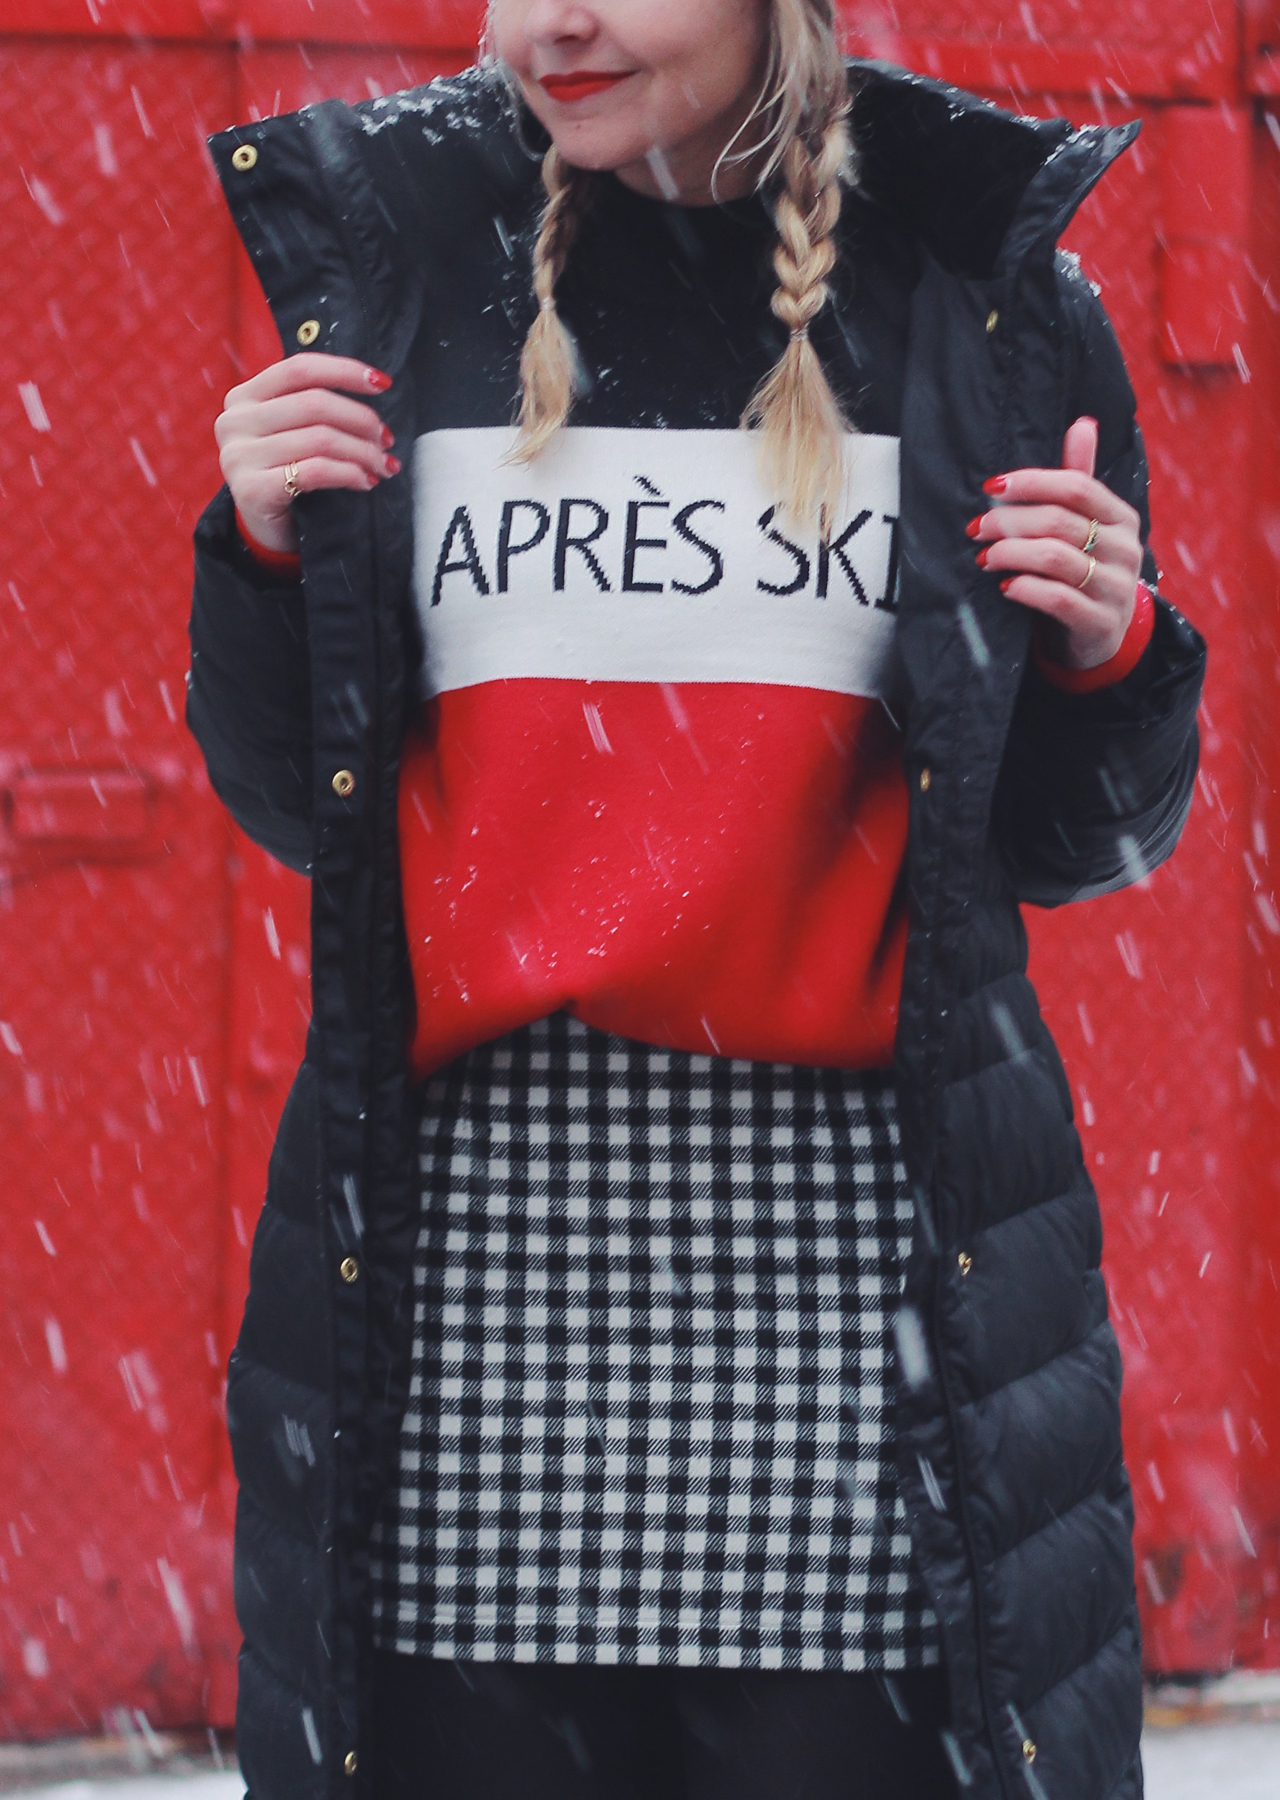 Apres ski style – The Steele Maiden